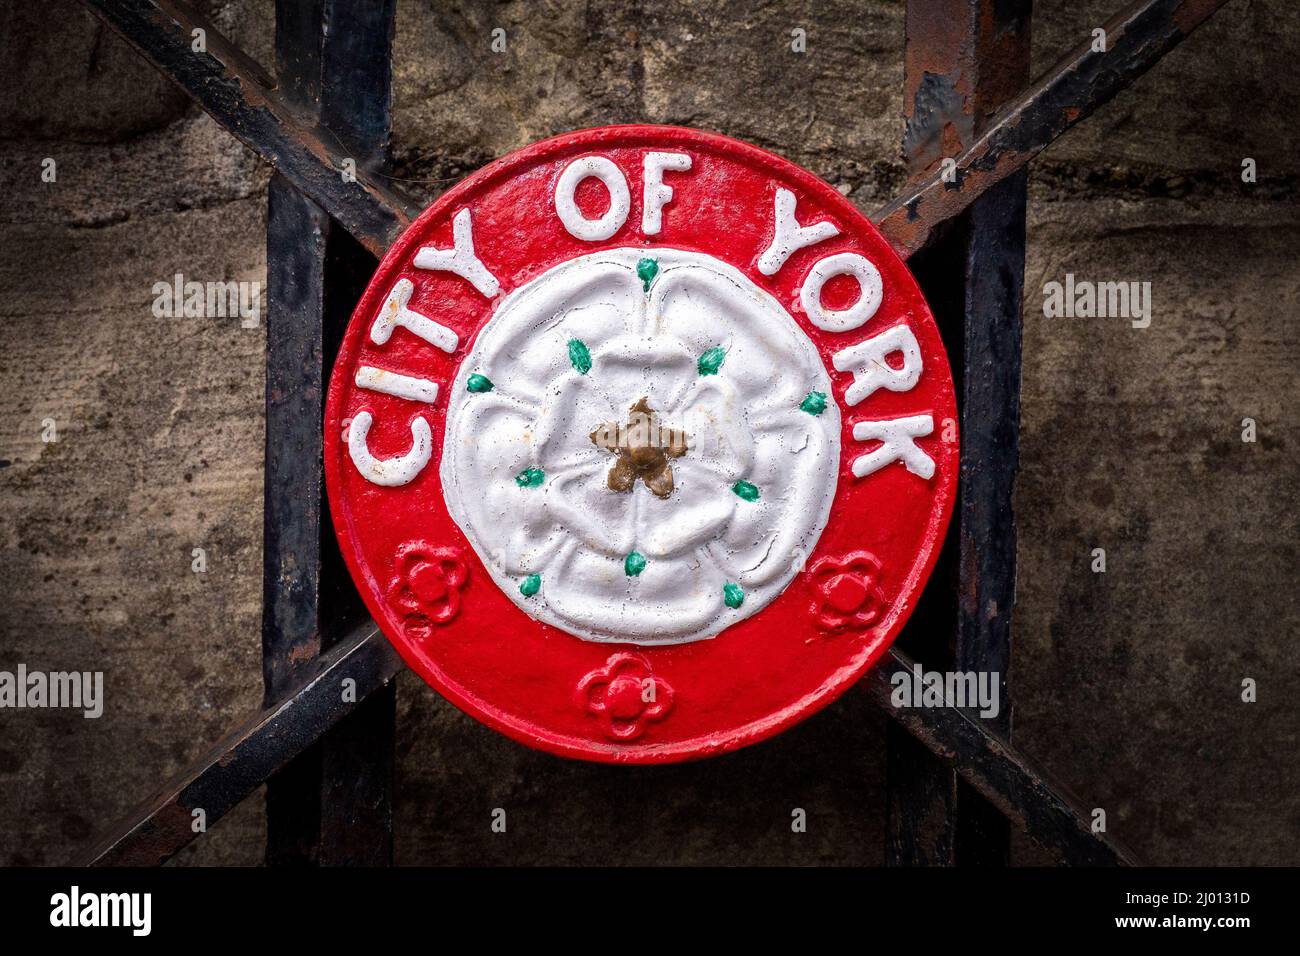 City of York gate badge, York, UK Stock Photo